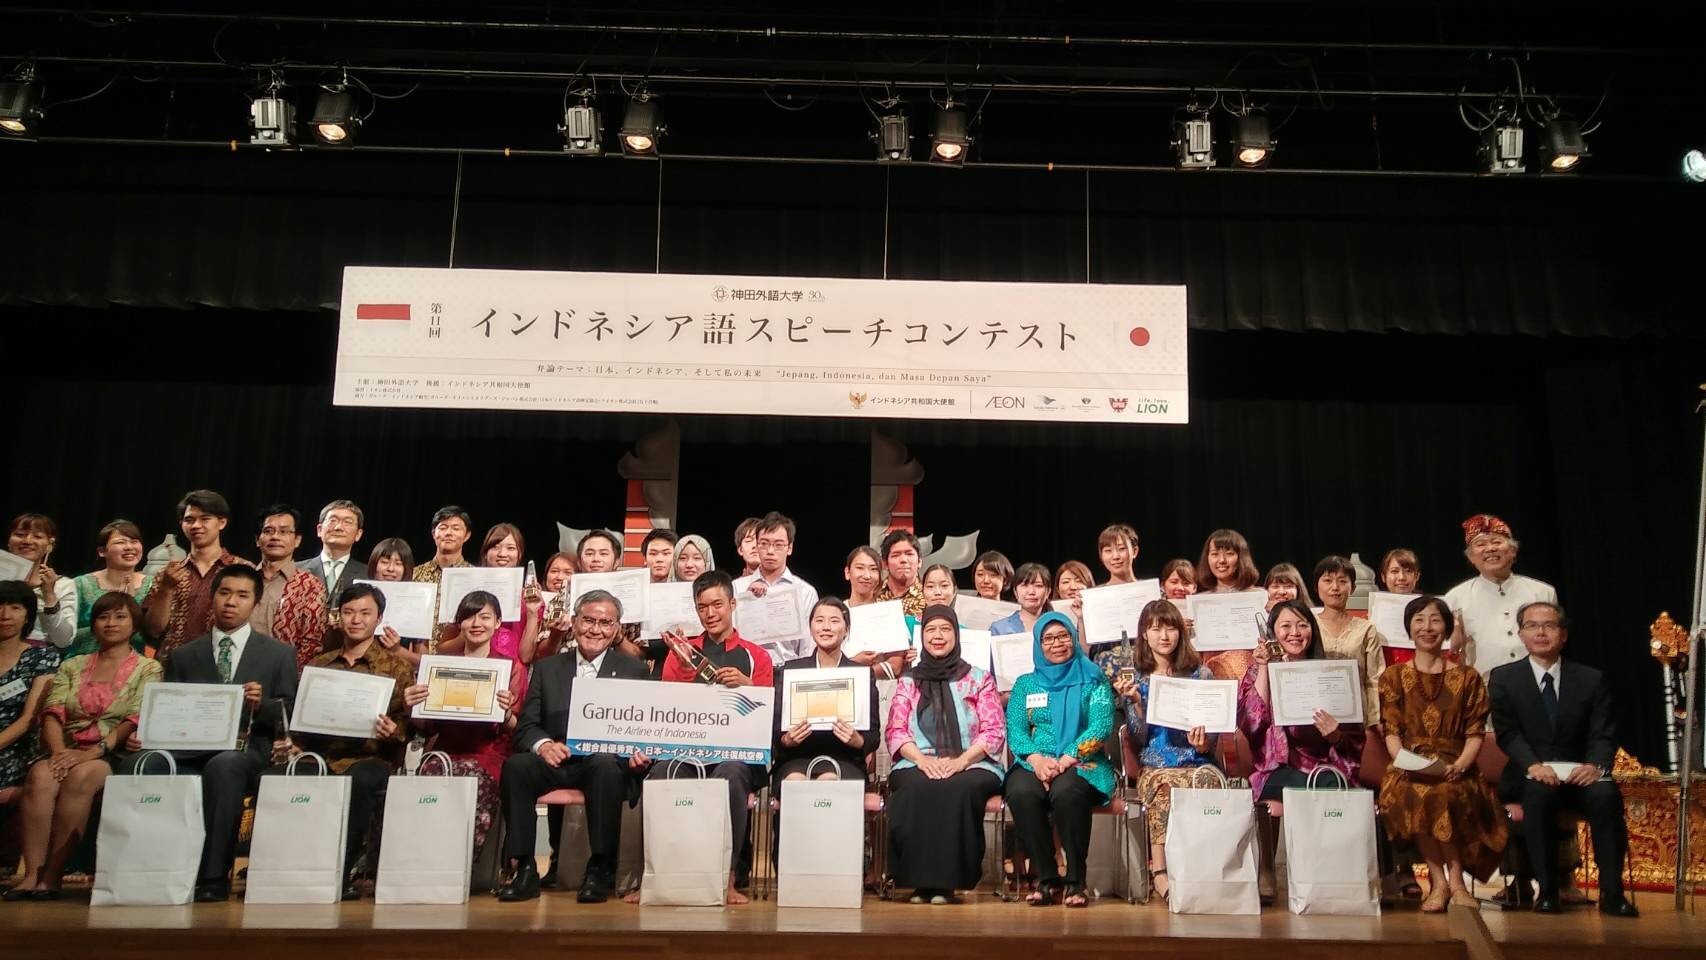 阪大生3名が「第11回インドネシア語スピーチコンテスト」で最優秀賞受賞など入賞